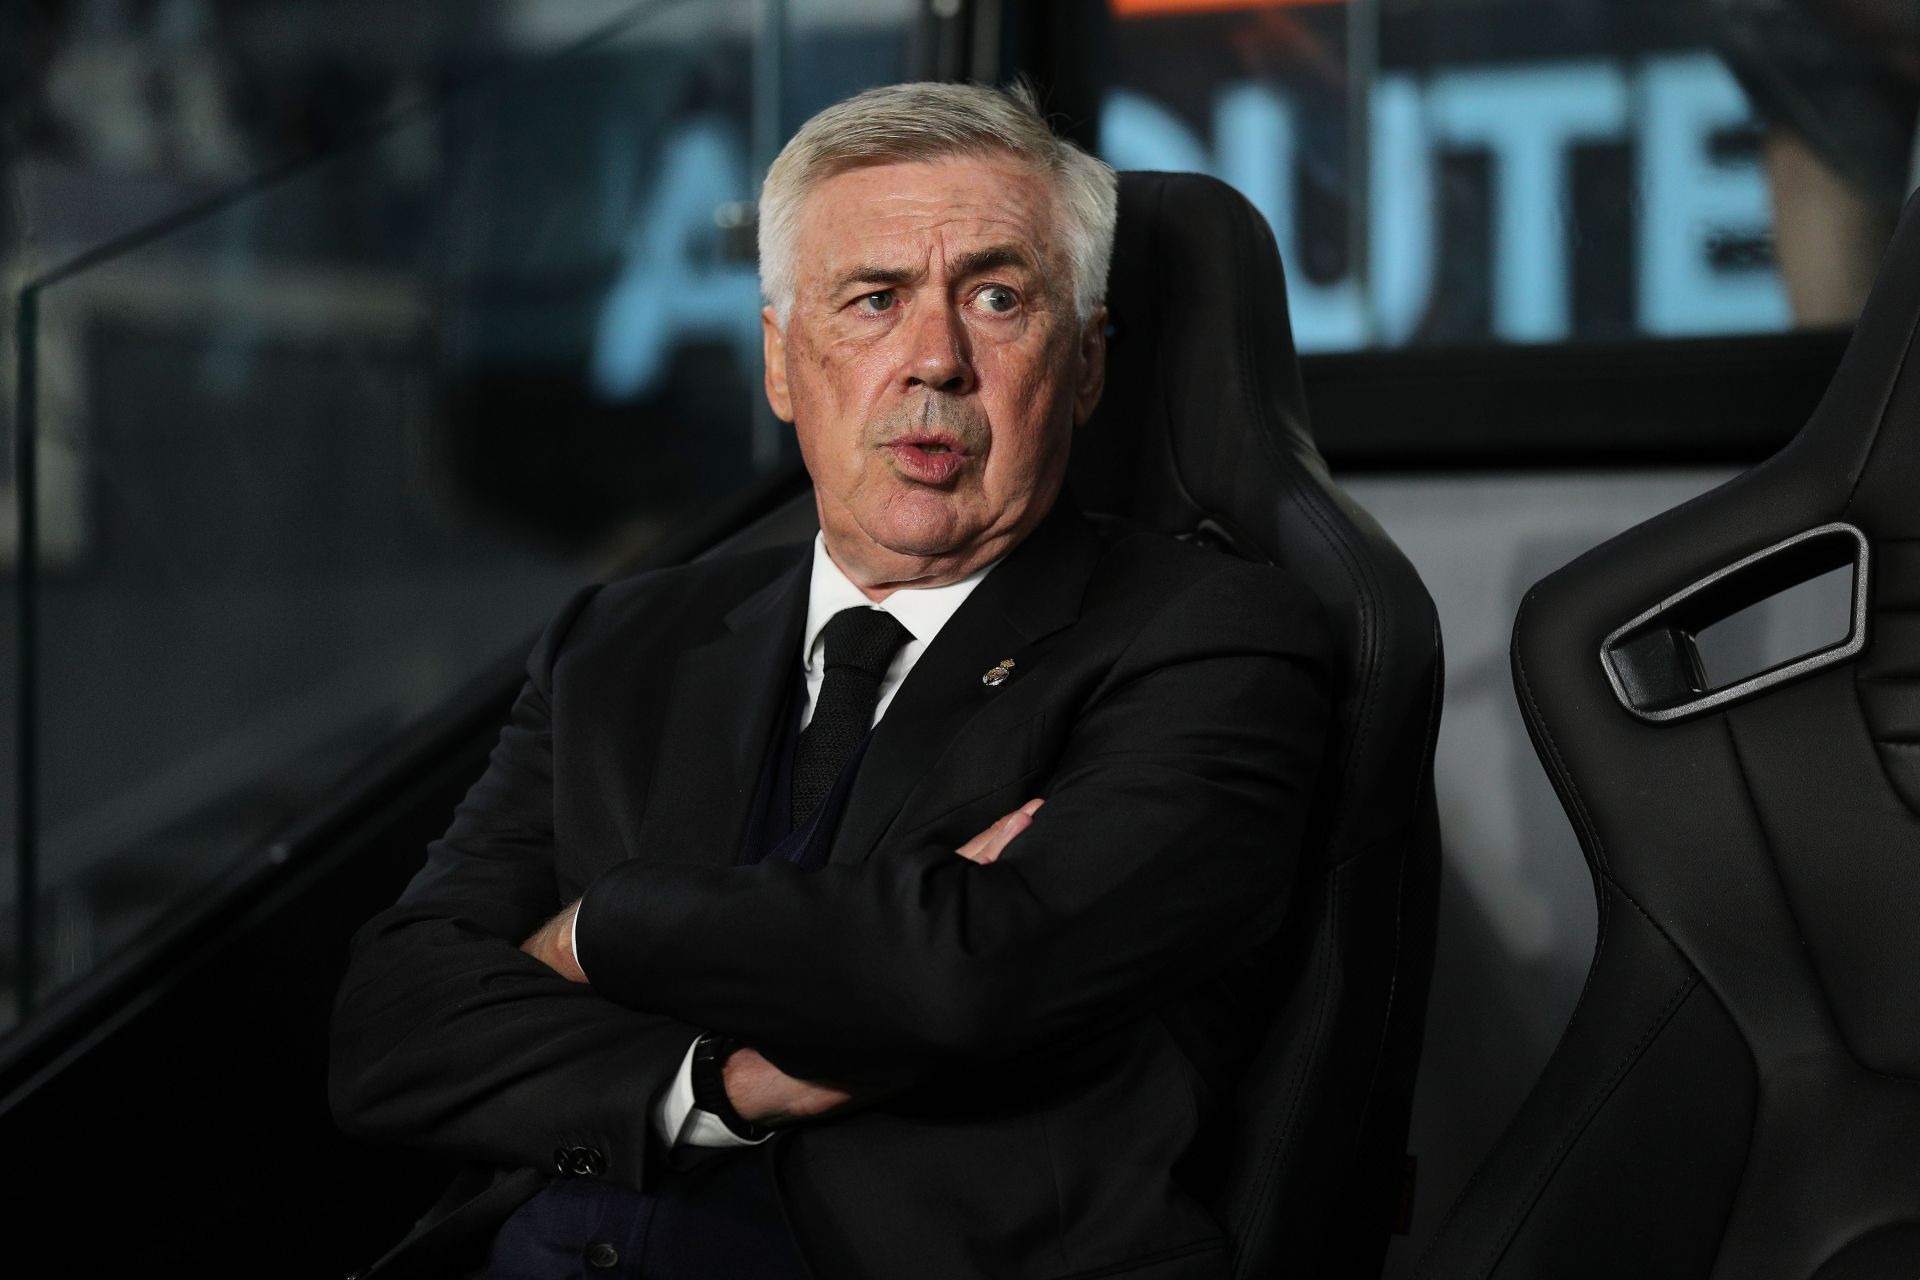 Carlo Anecoltti confirms plans to retire